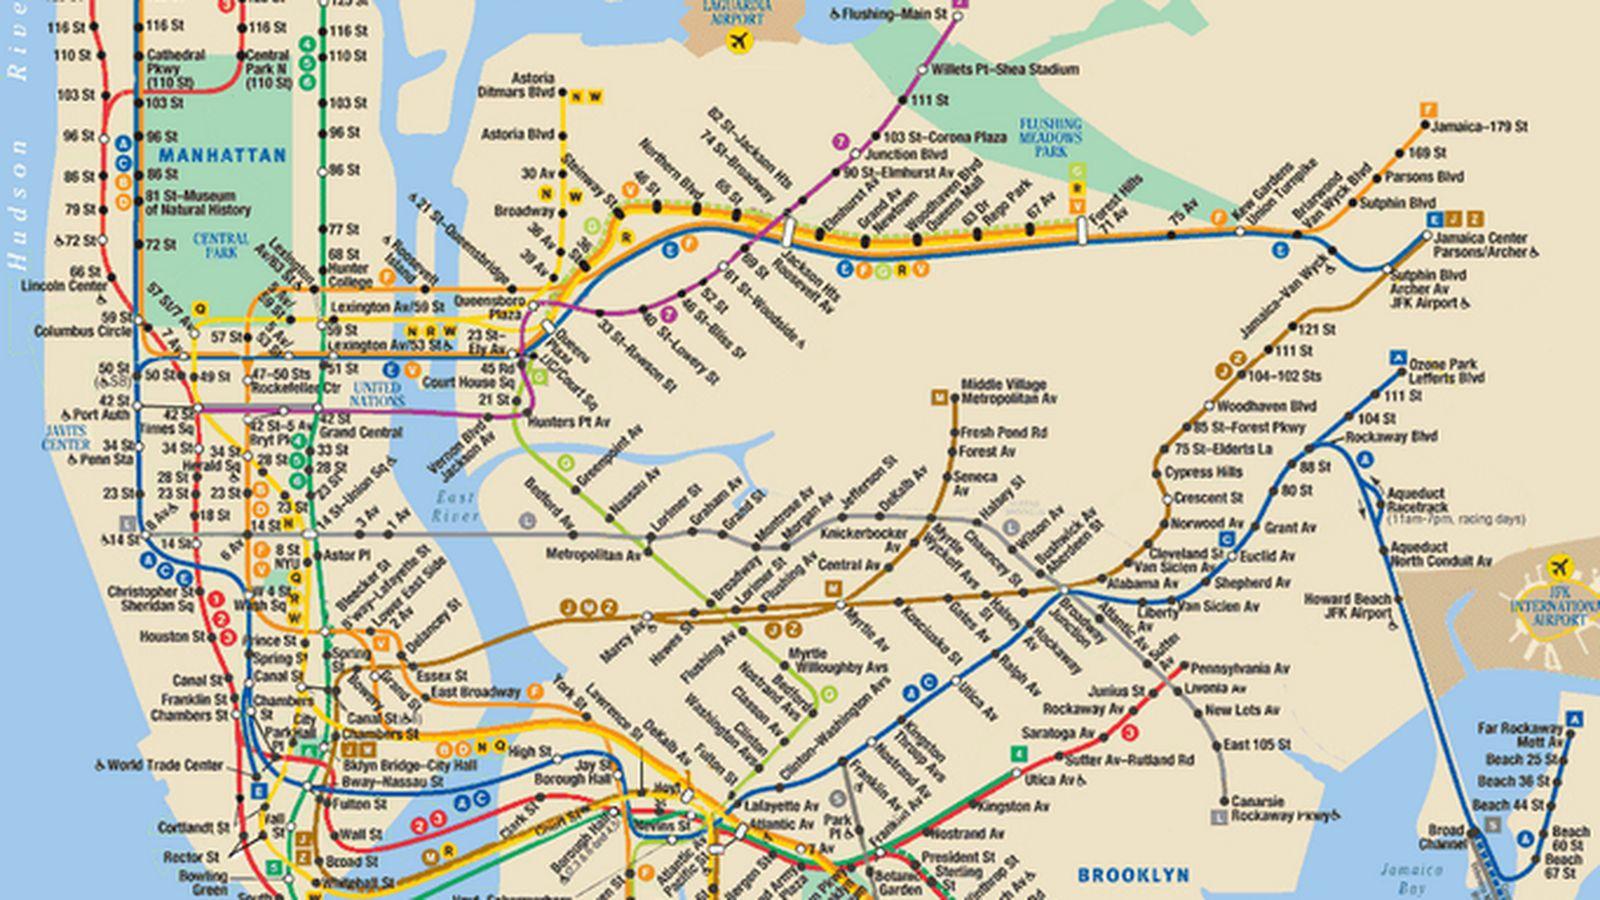 new york térkép New York i metró vonal térkép   Térkép new YORK i metró (New York  new york térkép